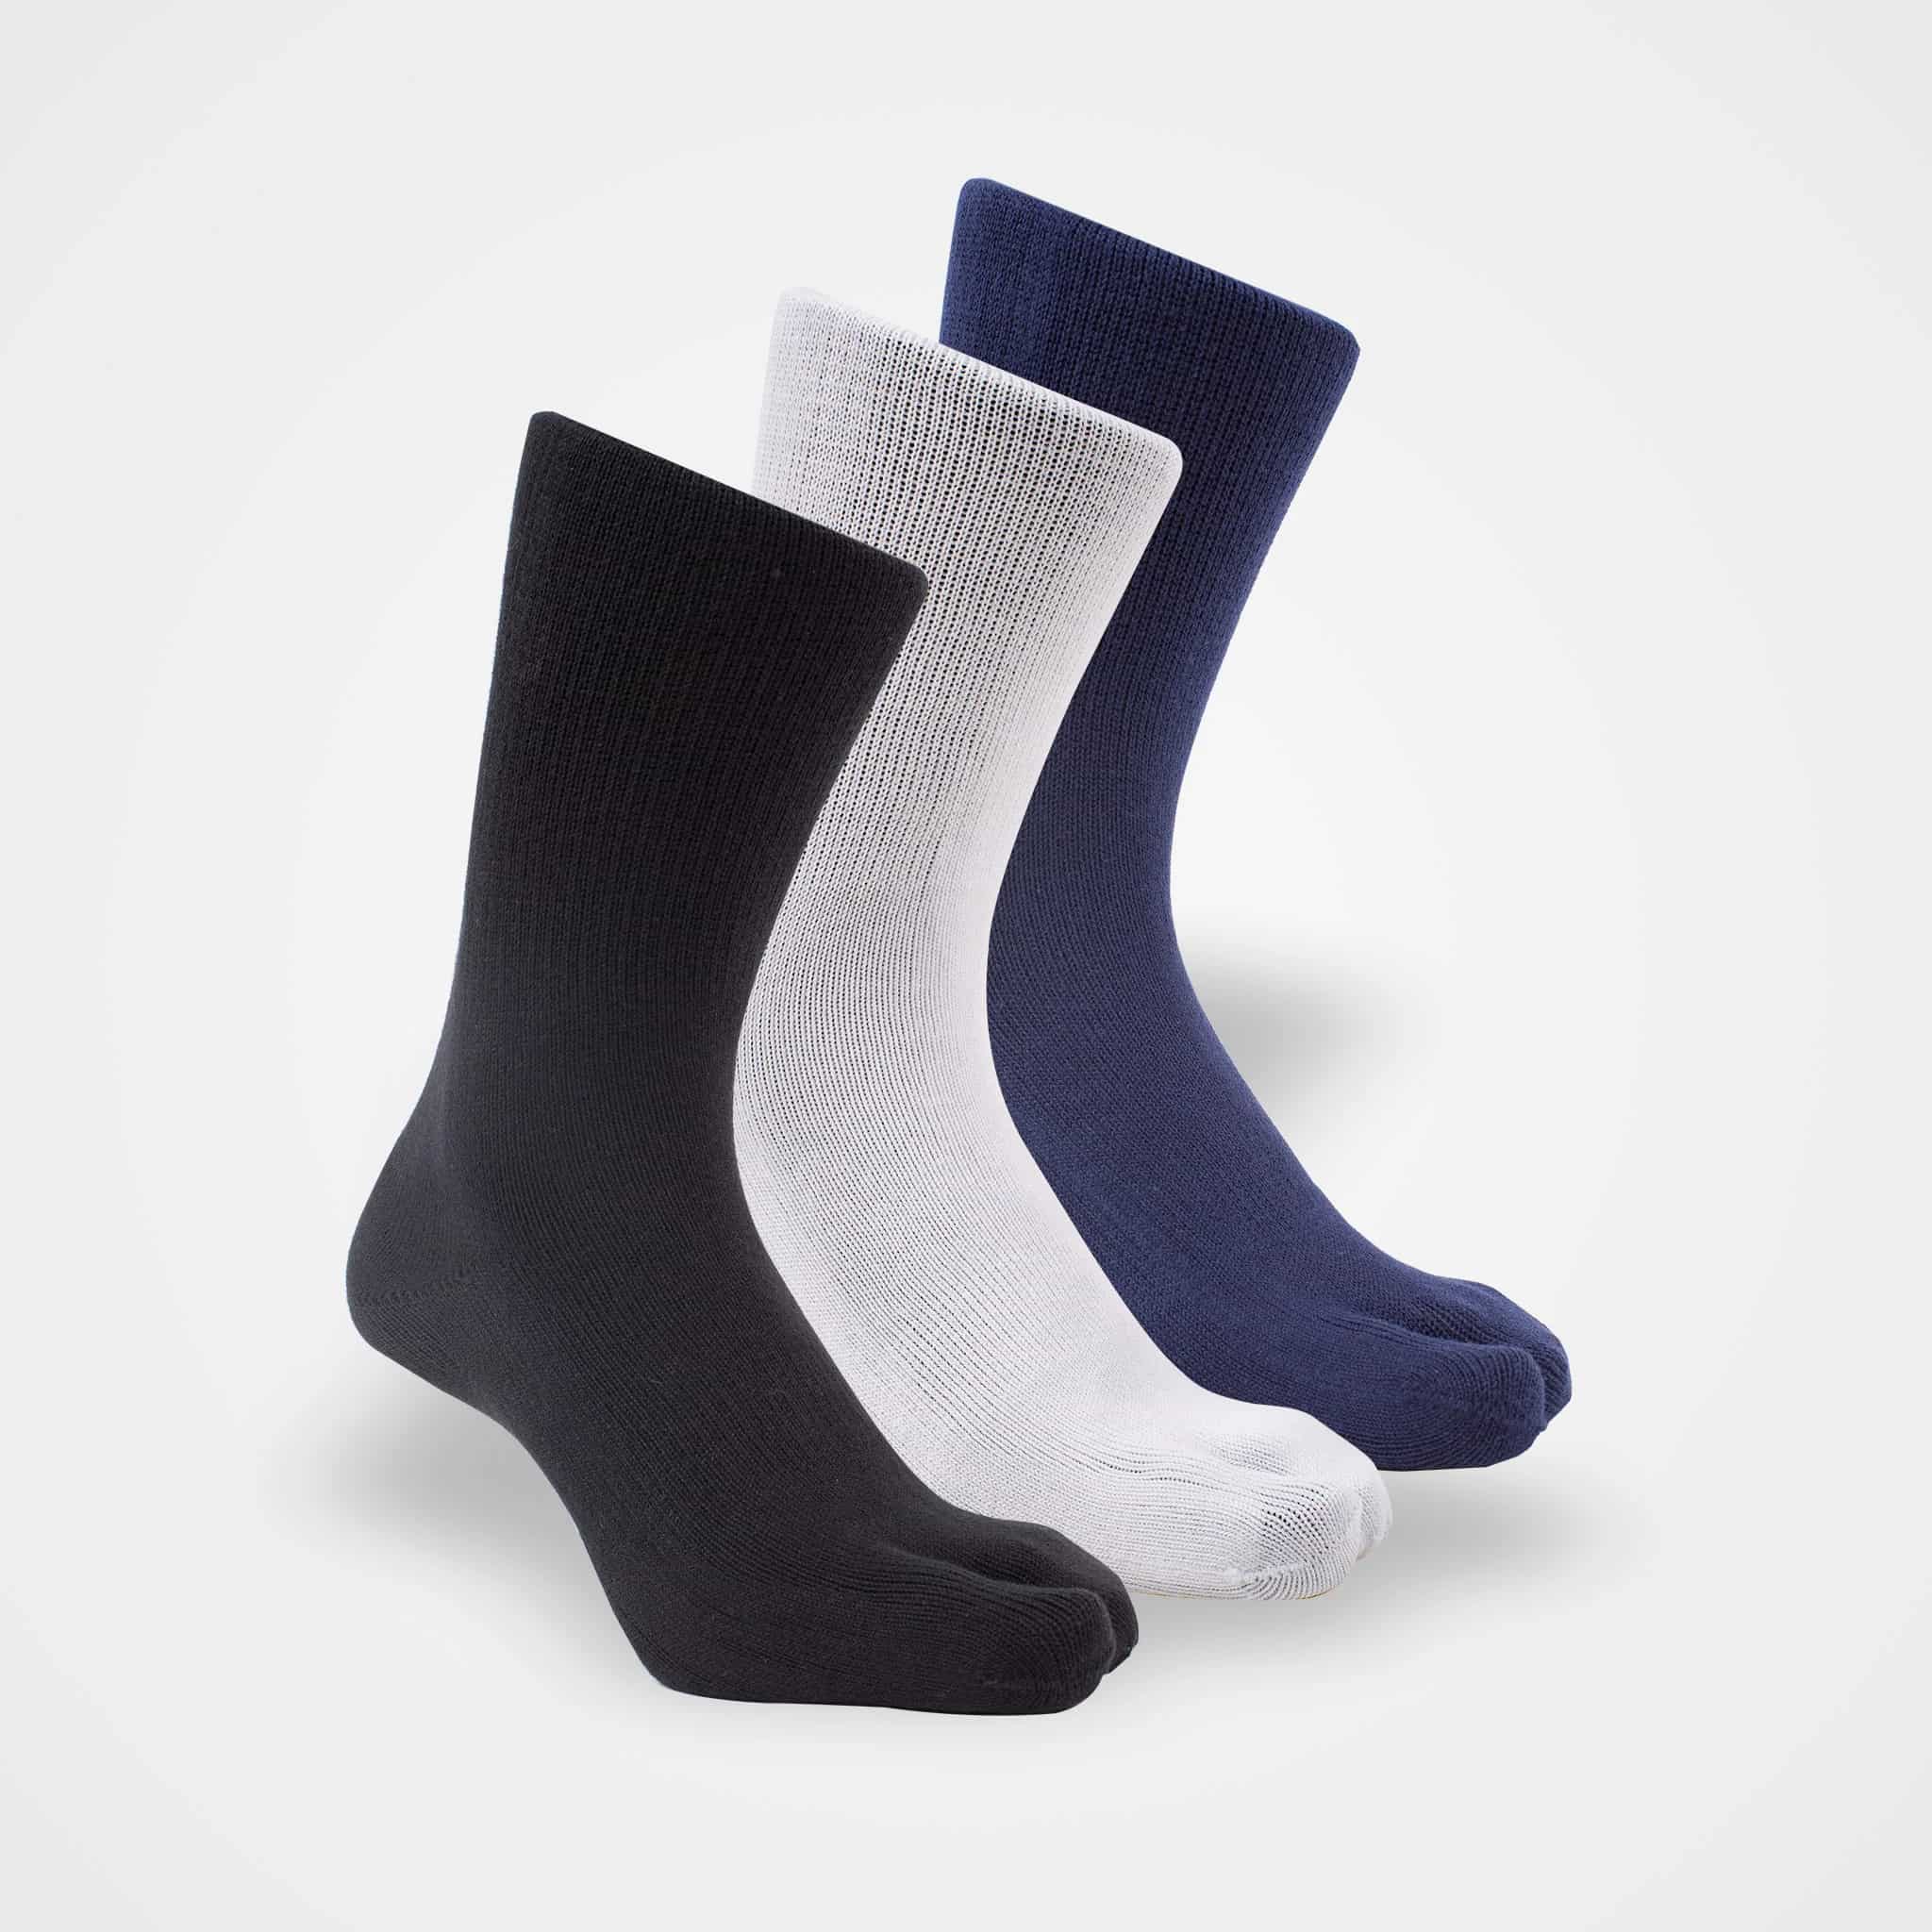 Hallux valgus socks / toe separators